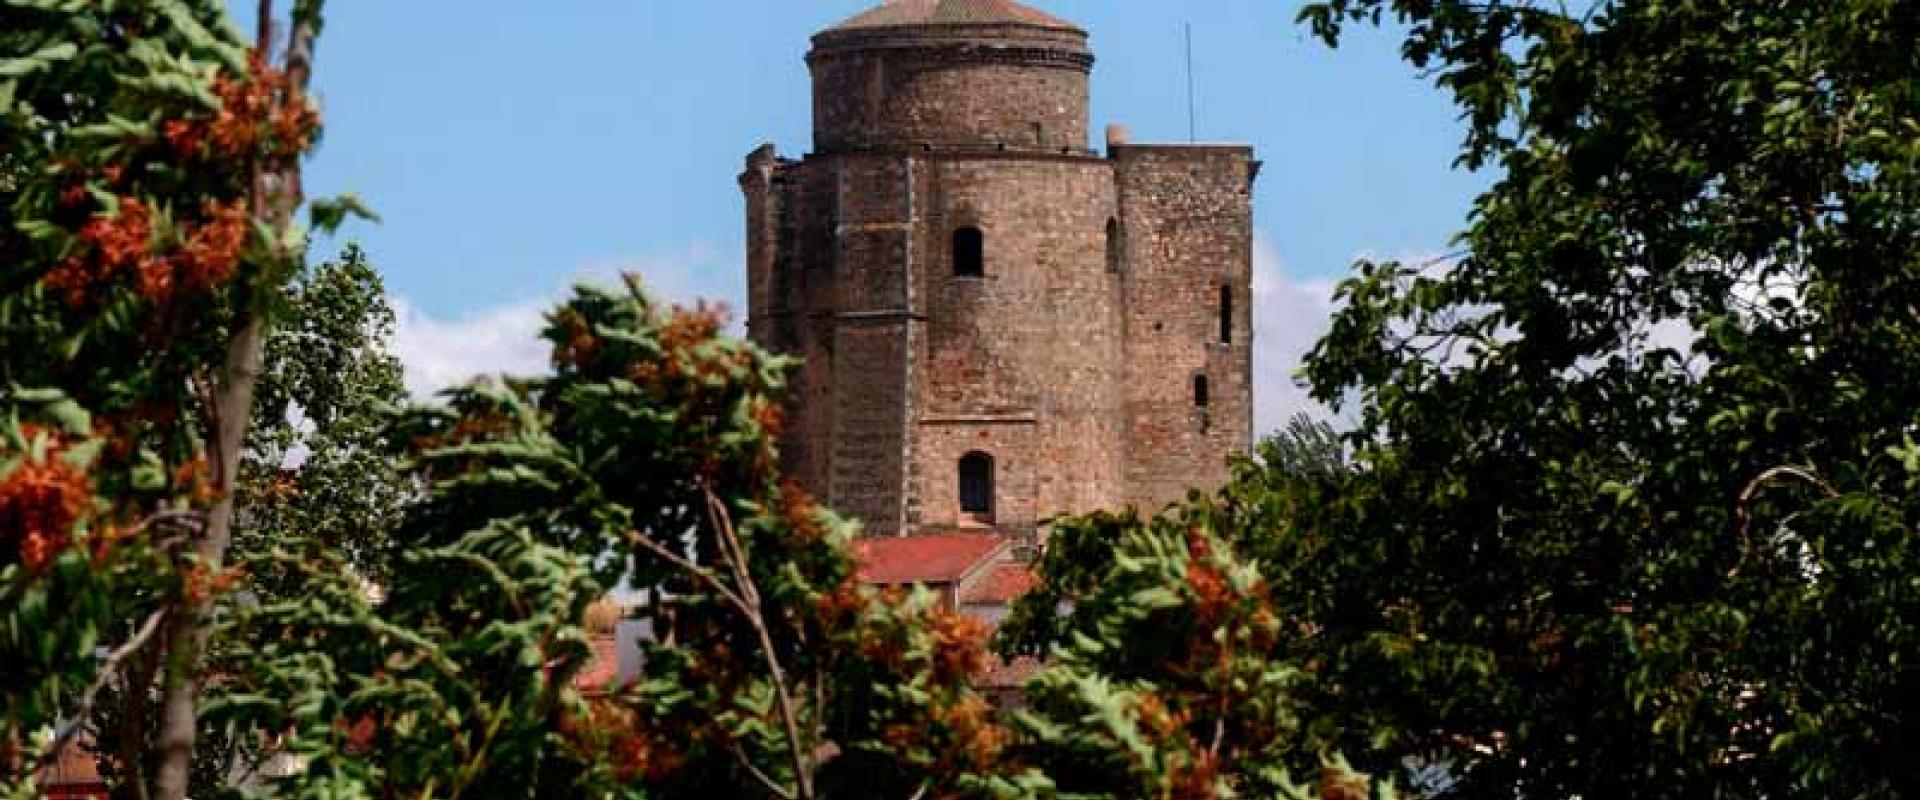 Alba de Tormes Castle